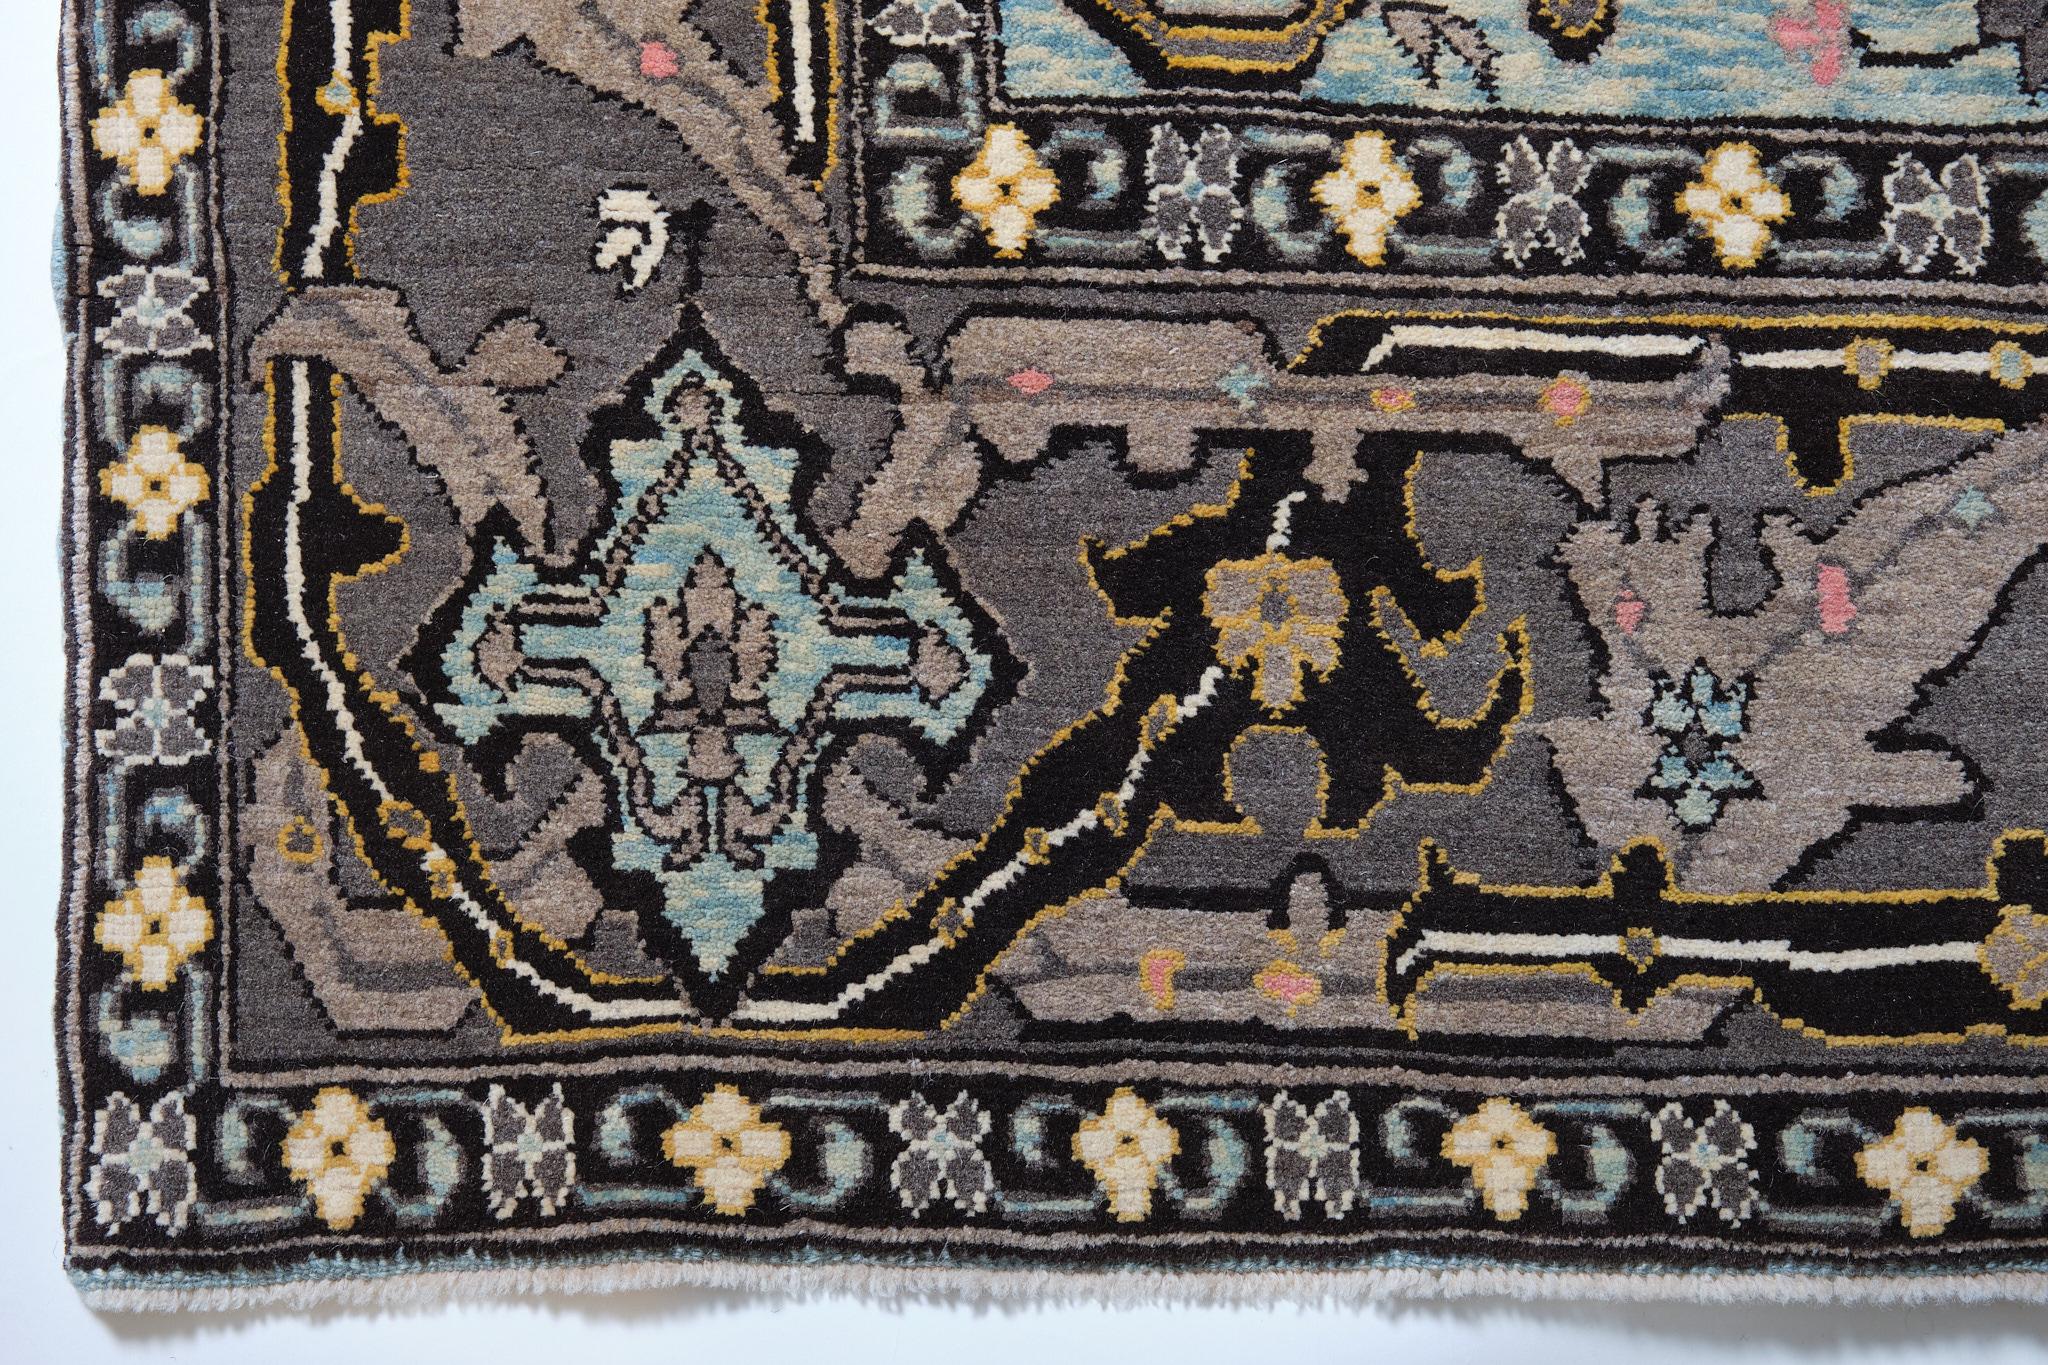 Die Quelle des Teppichs stammt aus dem Buch Antique rugs of Kurdistan A Historical Legacy of Woven Art, James D. Burns, 2002 nr.33. Dies ist ein feiner kurdischer Werkstatt-Teppich mit Split-Palmette- und Dreiblatt-Arabesken-Muster aus der Mitte des